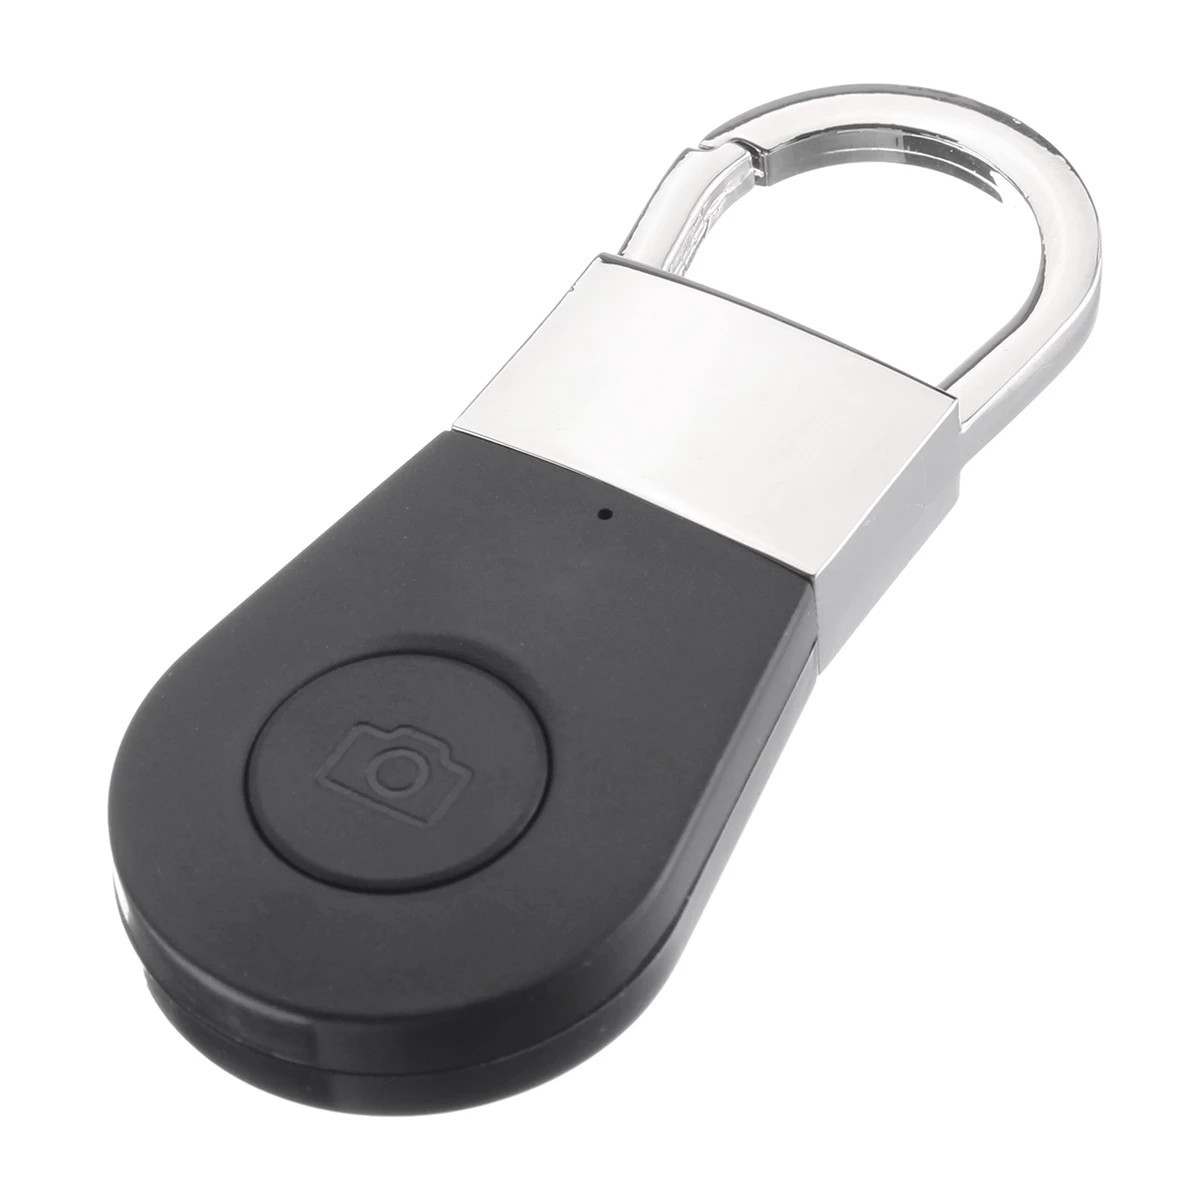 Key finder - bluetooth искатель ключей, мобильного телефона и т.д.